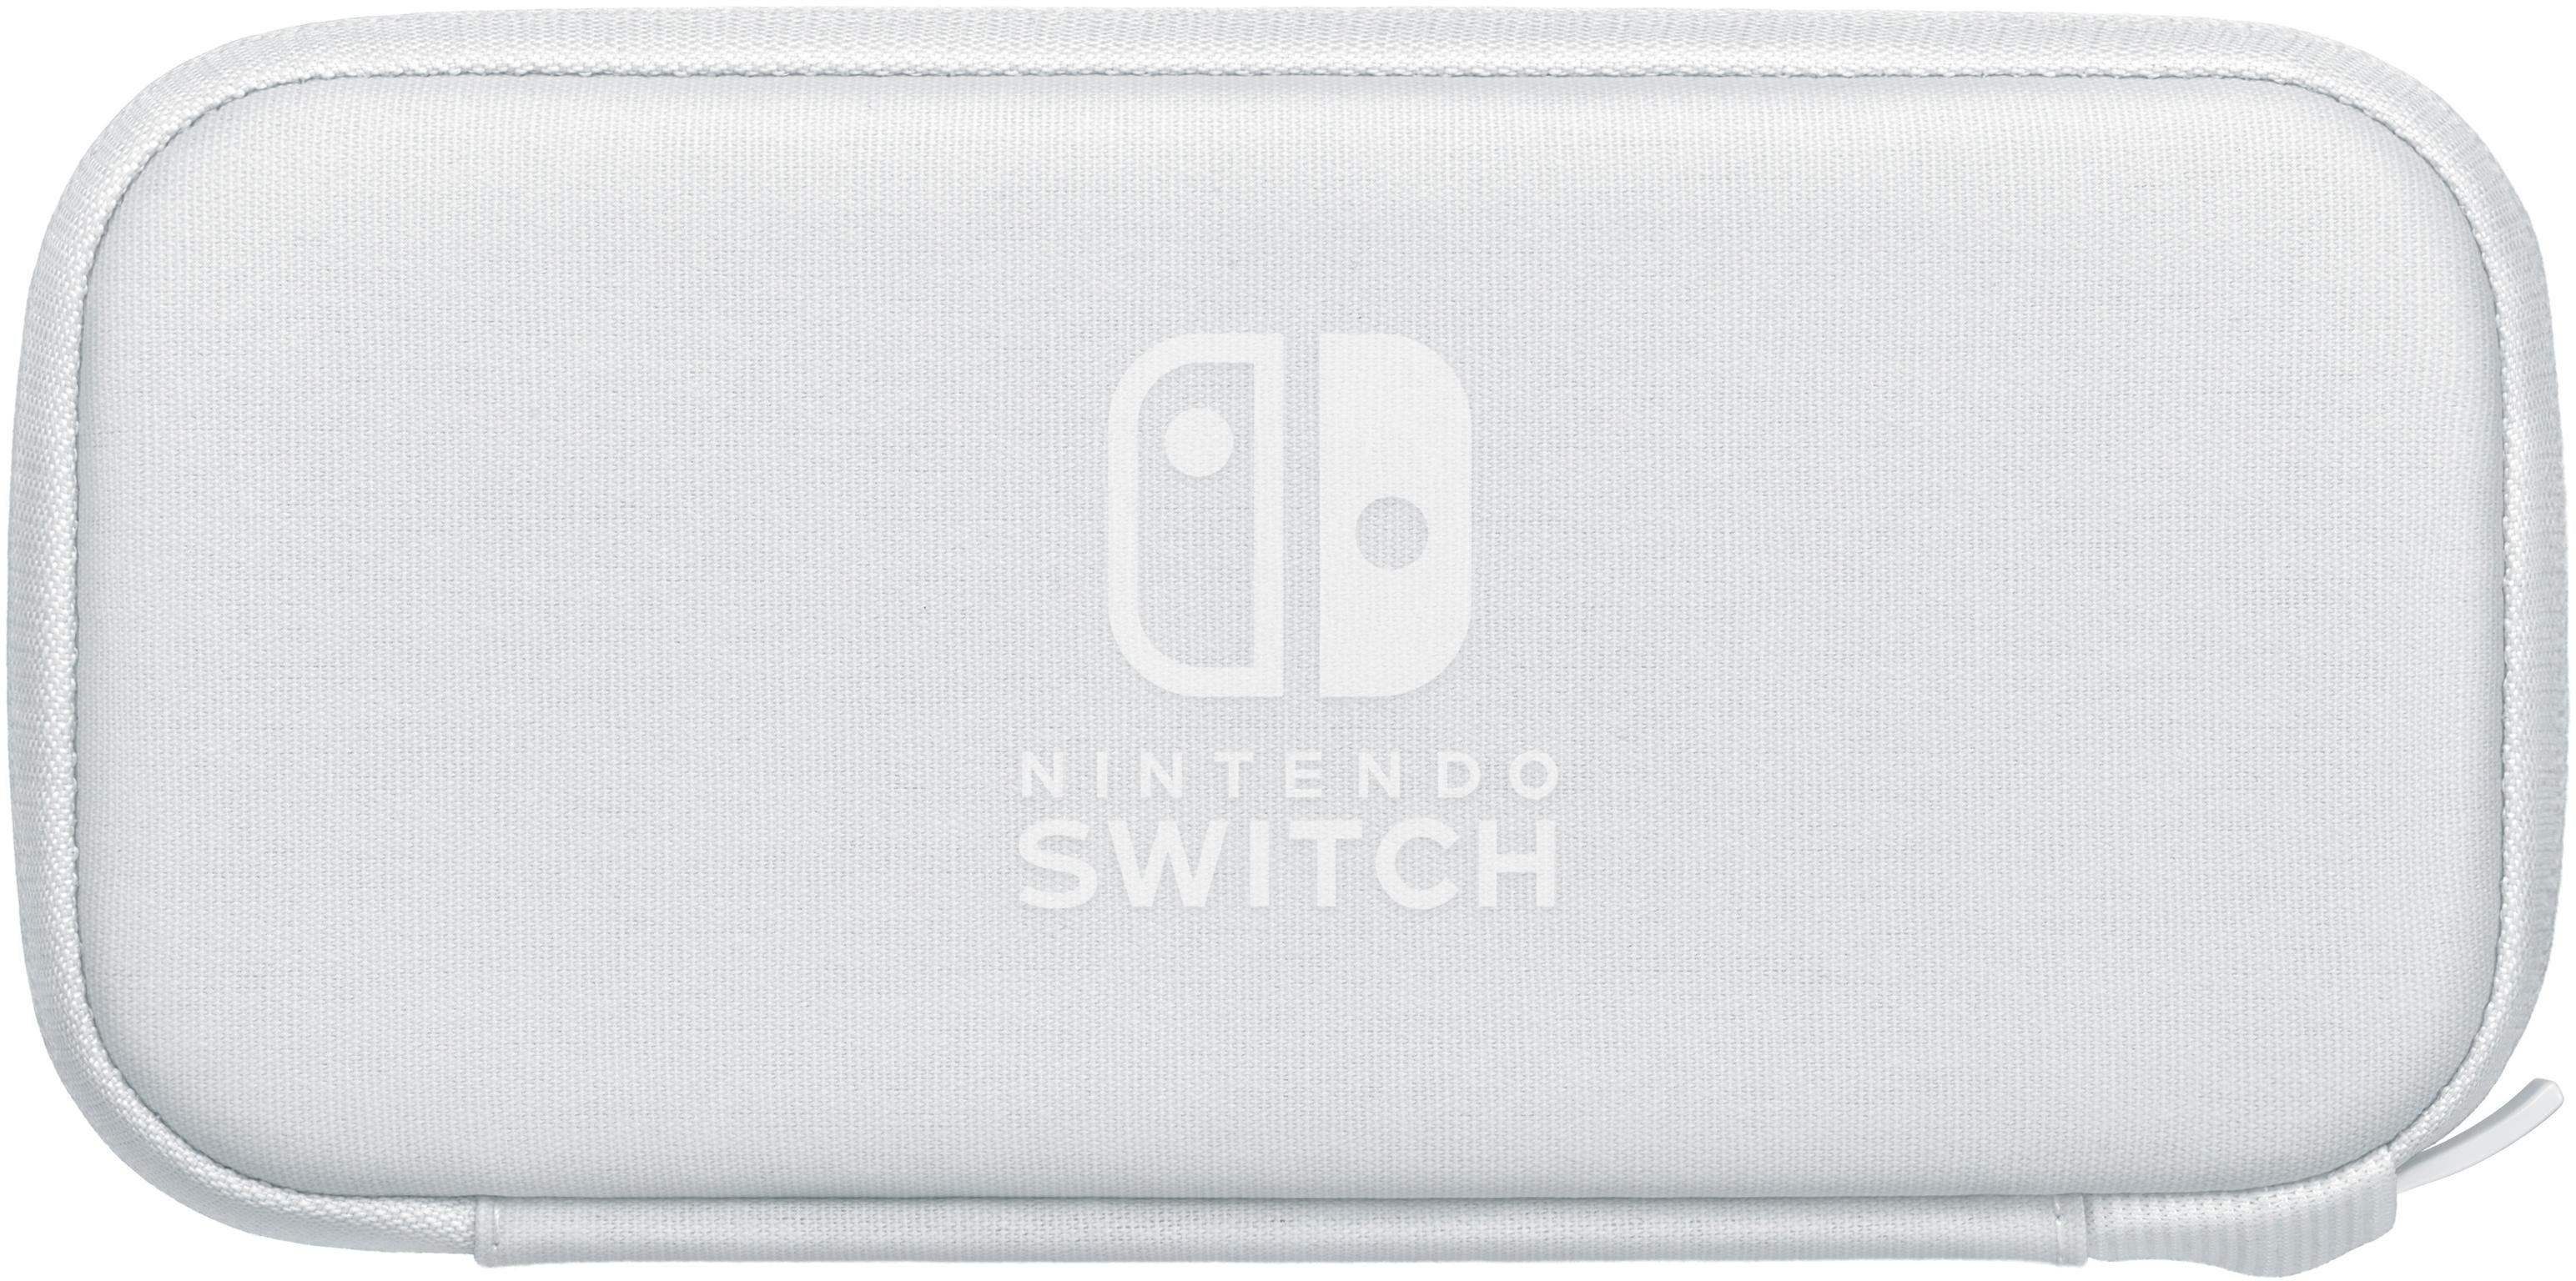 Spielekonsolen-Tasche Switch inkl. Schutzfolie Lite, Nintendo